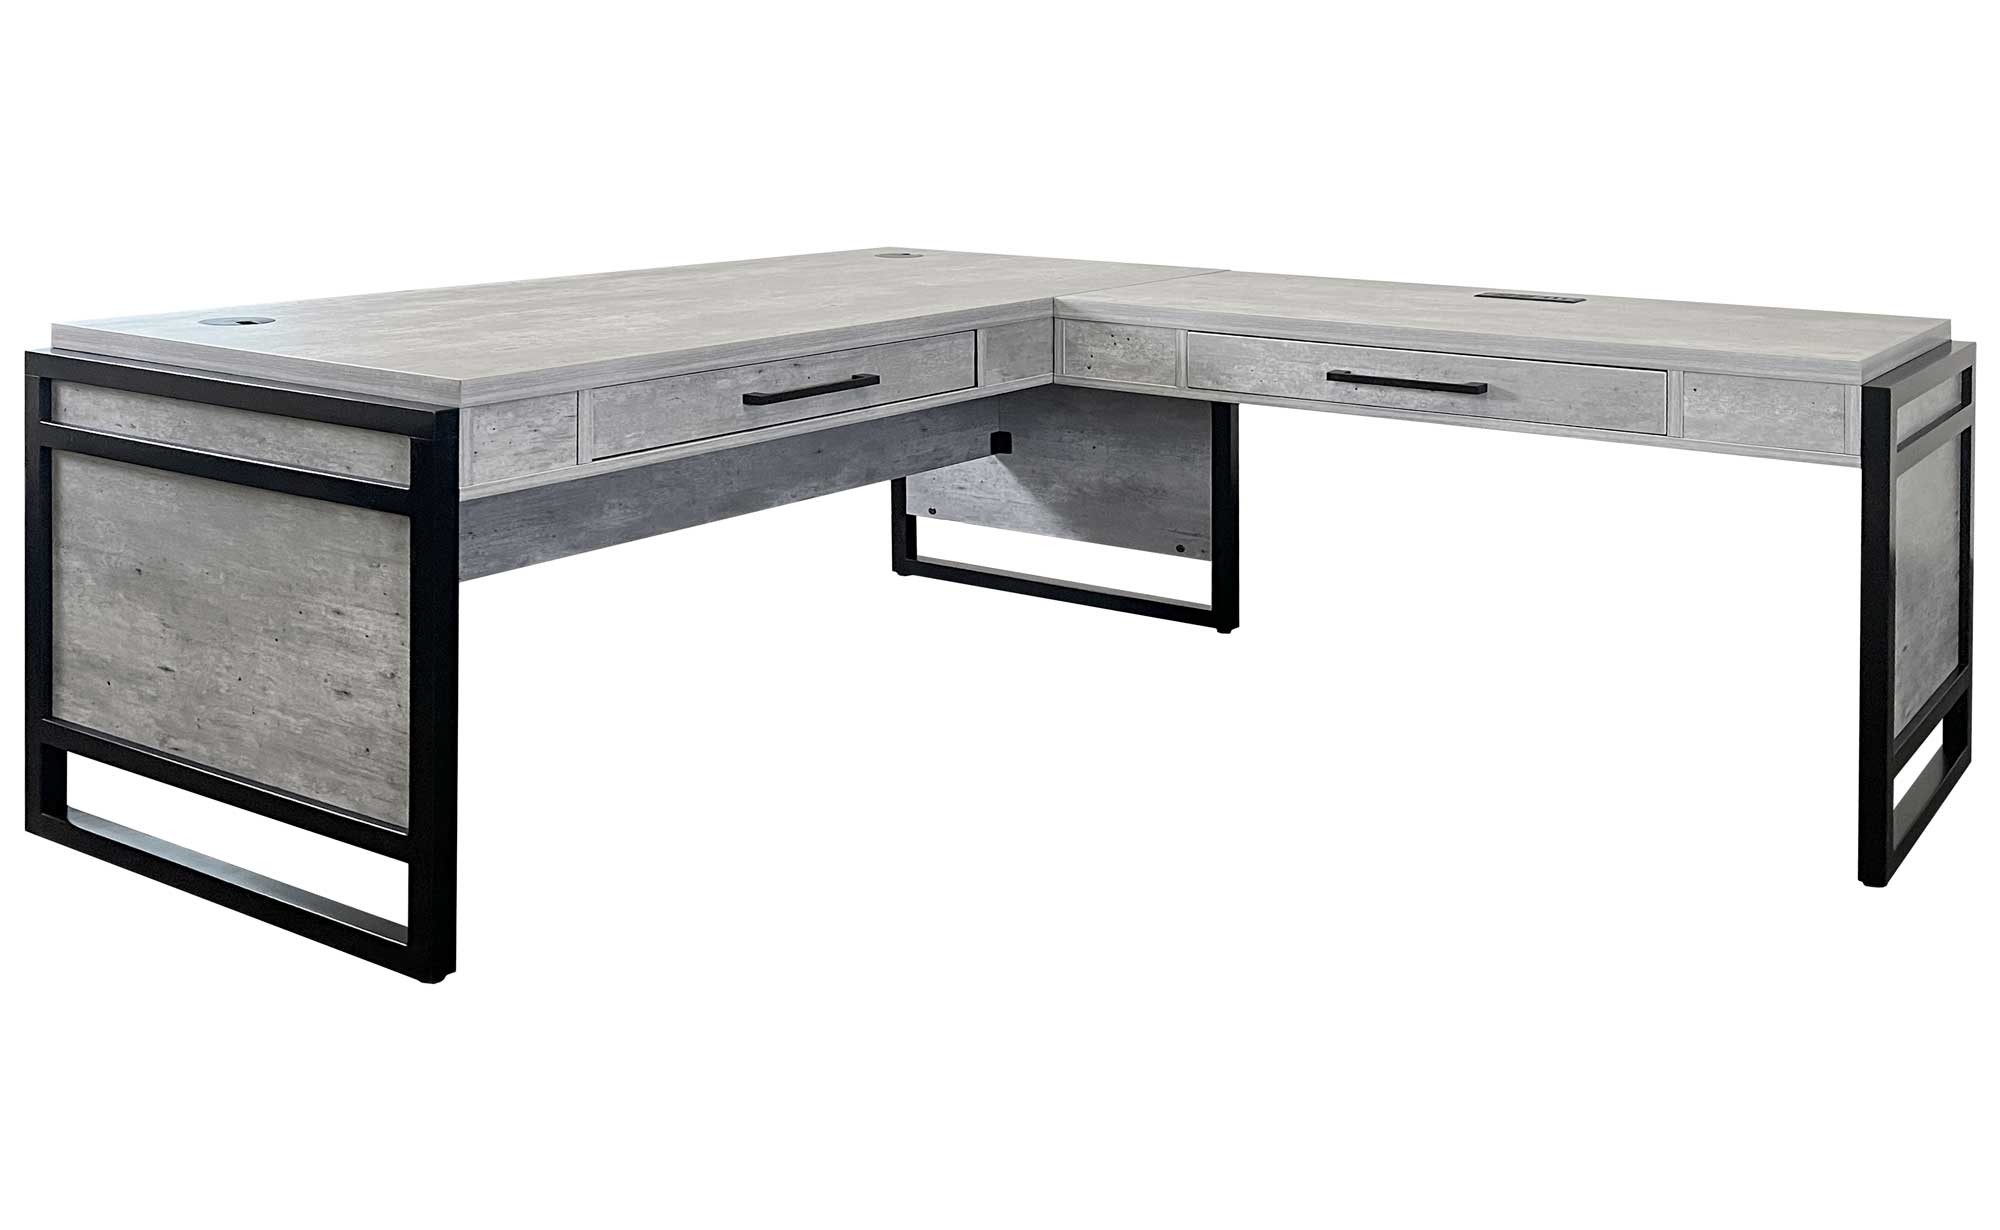 Mason Complete Open L Desk by Martin Furniture, Concrete